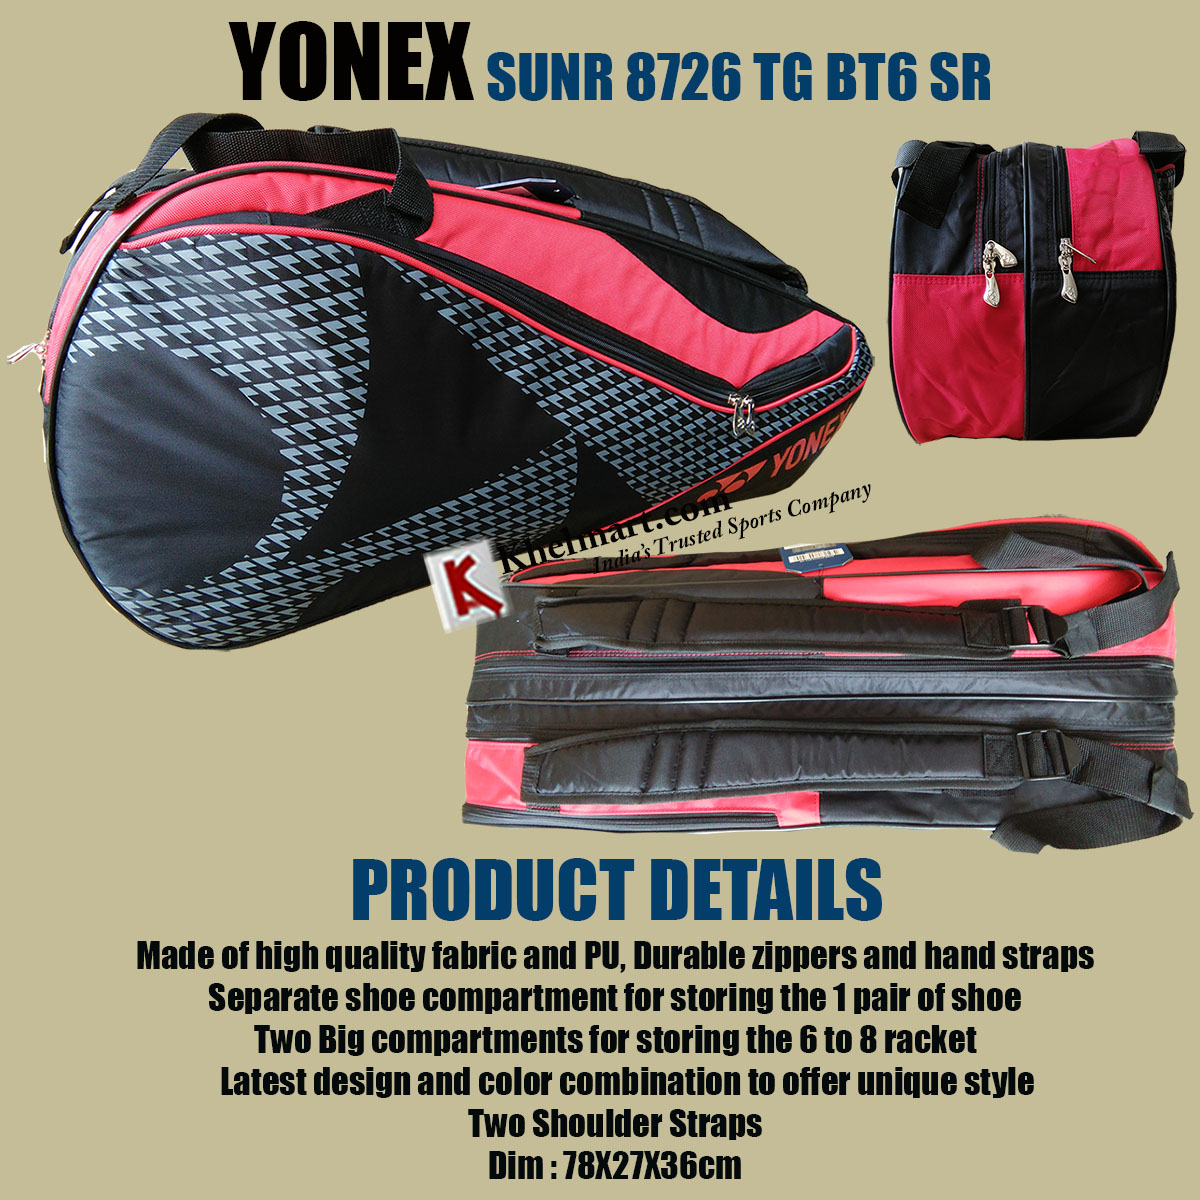 YONEX_SUNR_8726_TG_BT6_SR_Badminton_kit_Bag.jpg